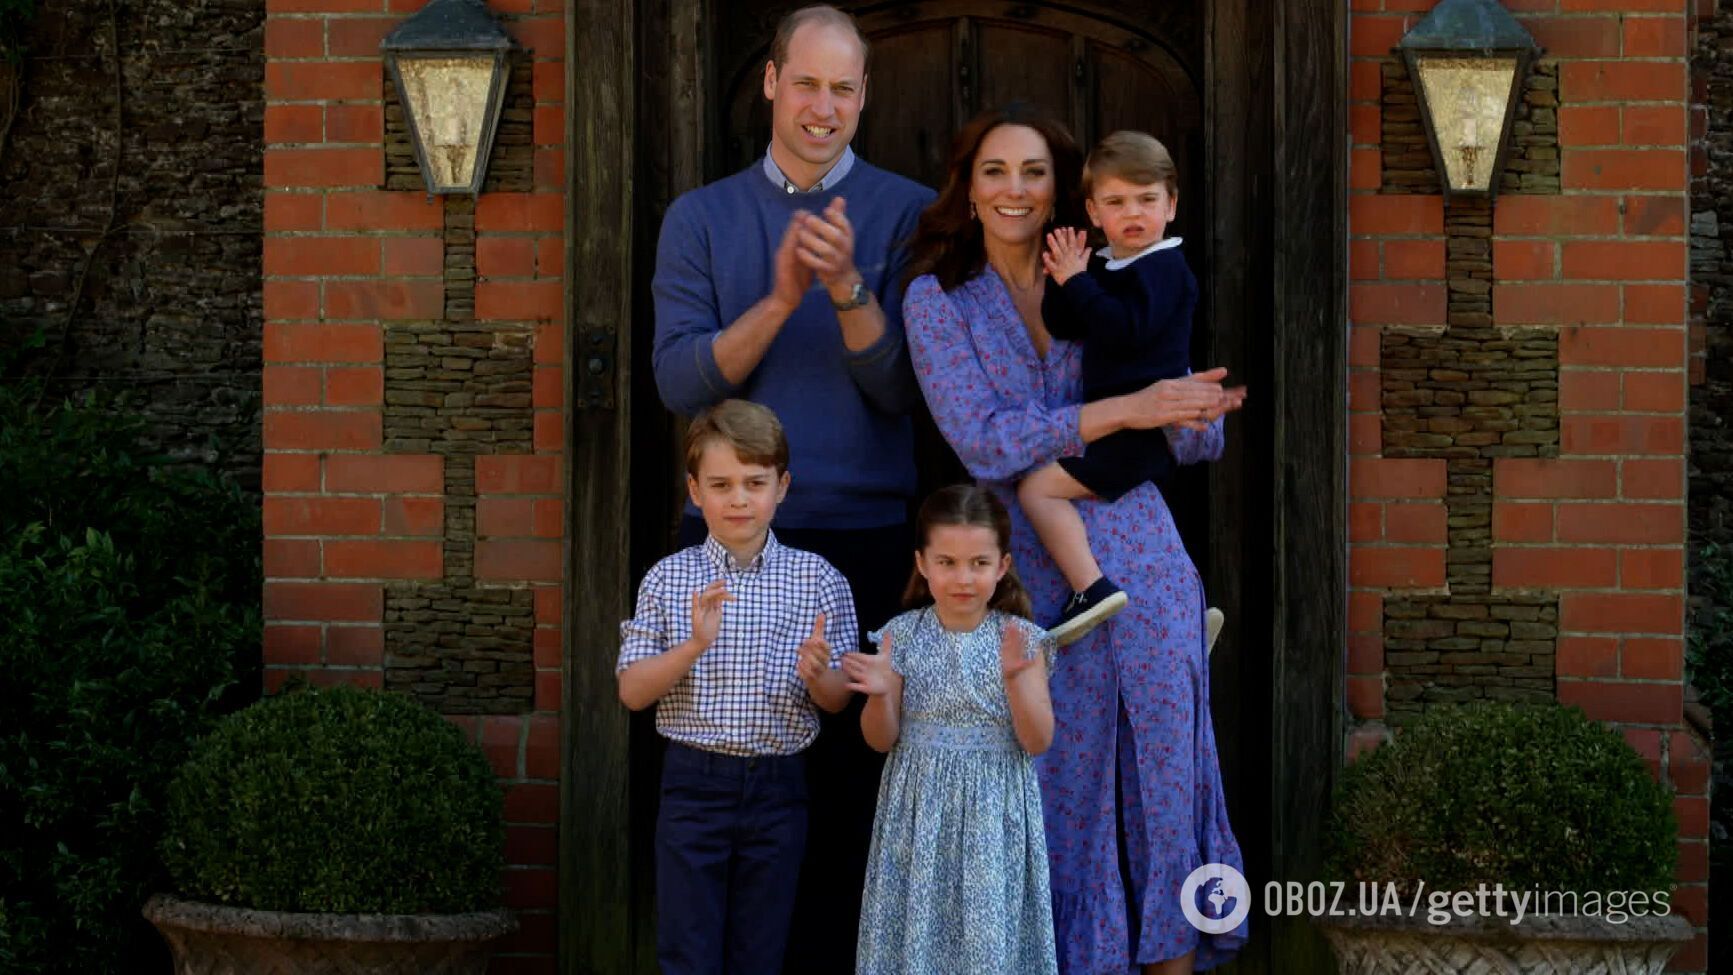 Кейт Міддлтон вагітна вчетверте: про це знала покійна королева Єлизавета II та король Чарльз III – ЗМІ